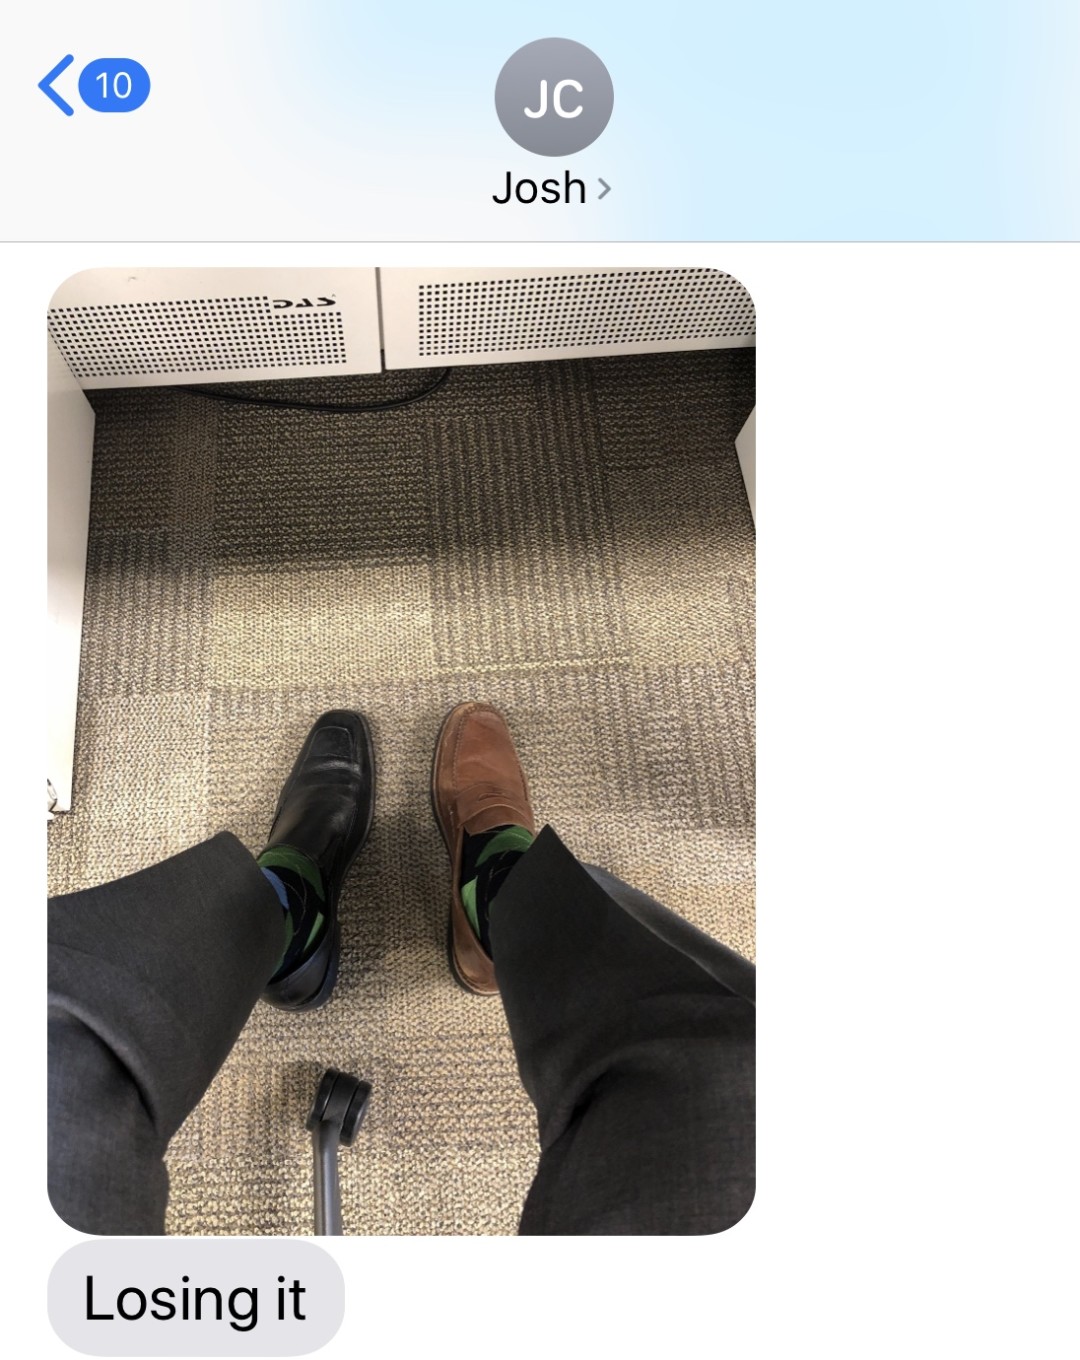 josh's shoes